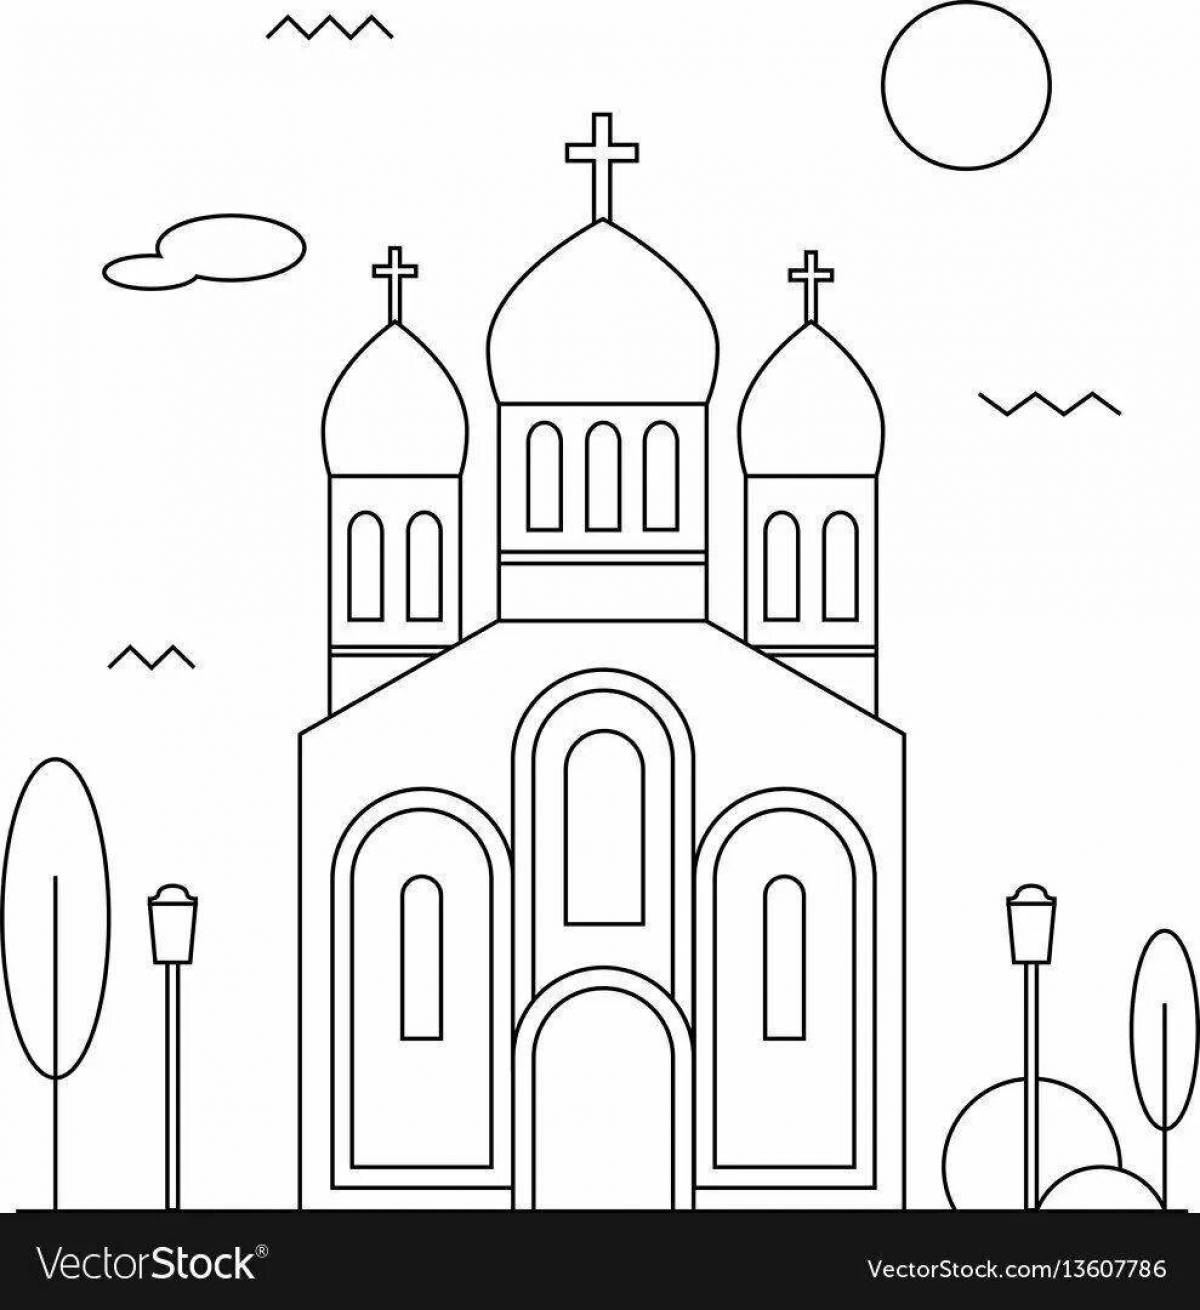 Шаблон церкви для рисования